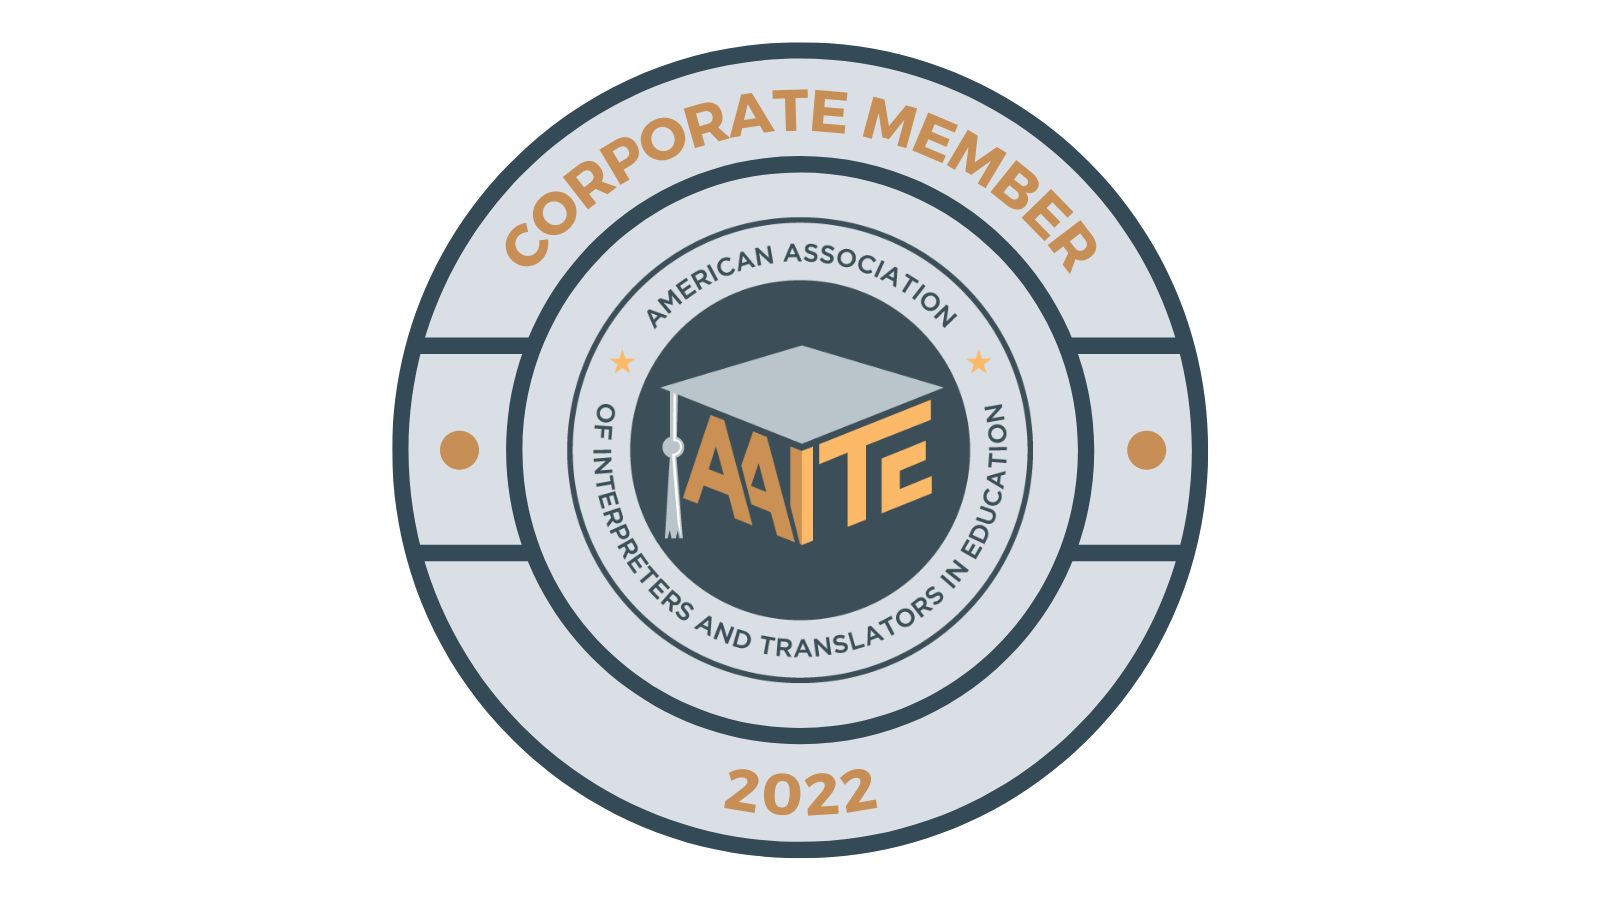 AAITE Corporate Member Badge.png